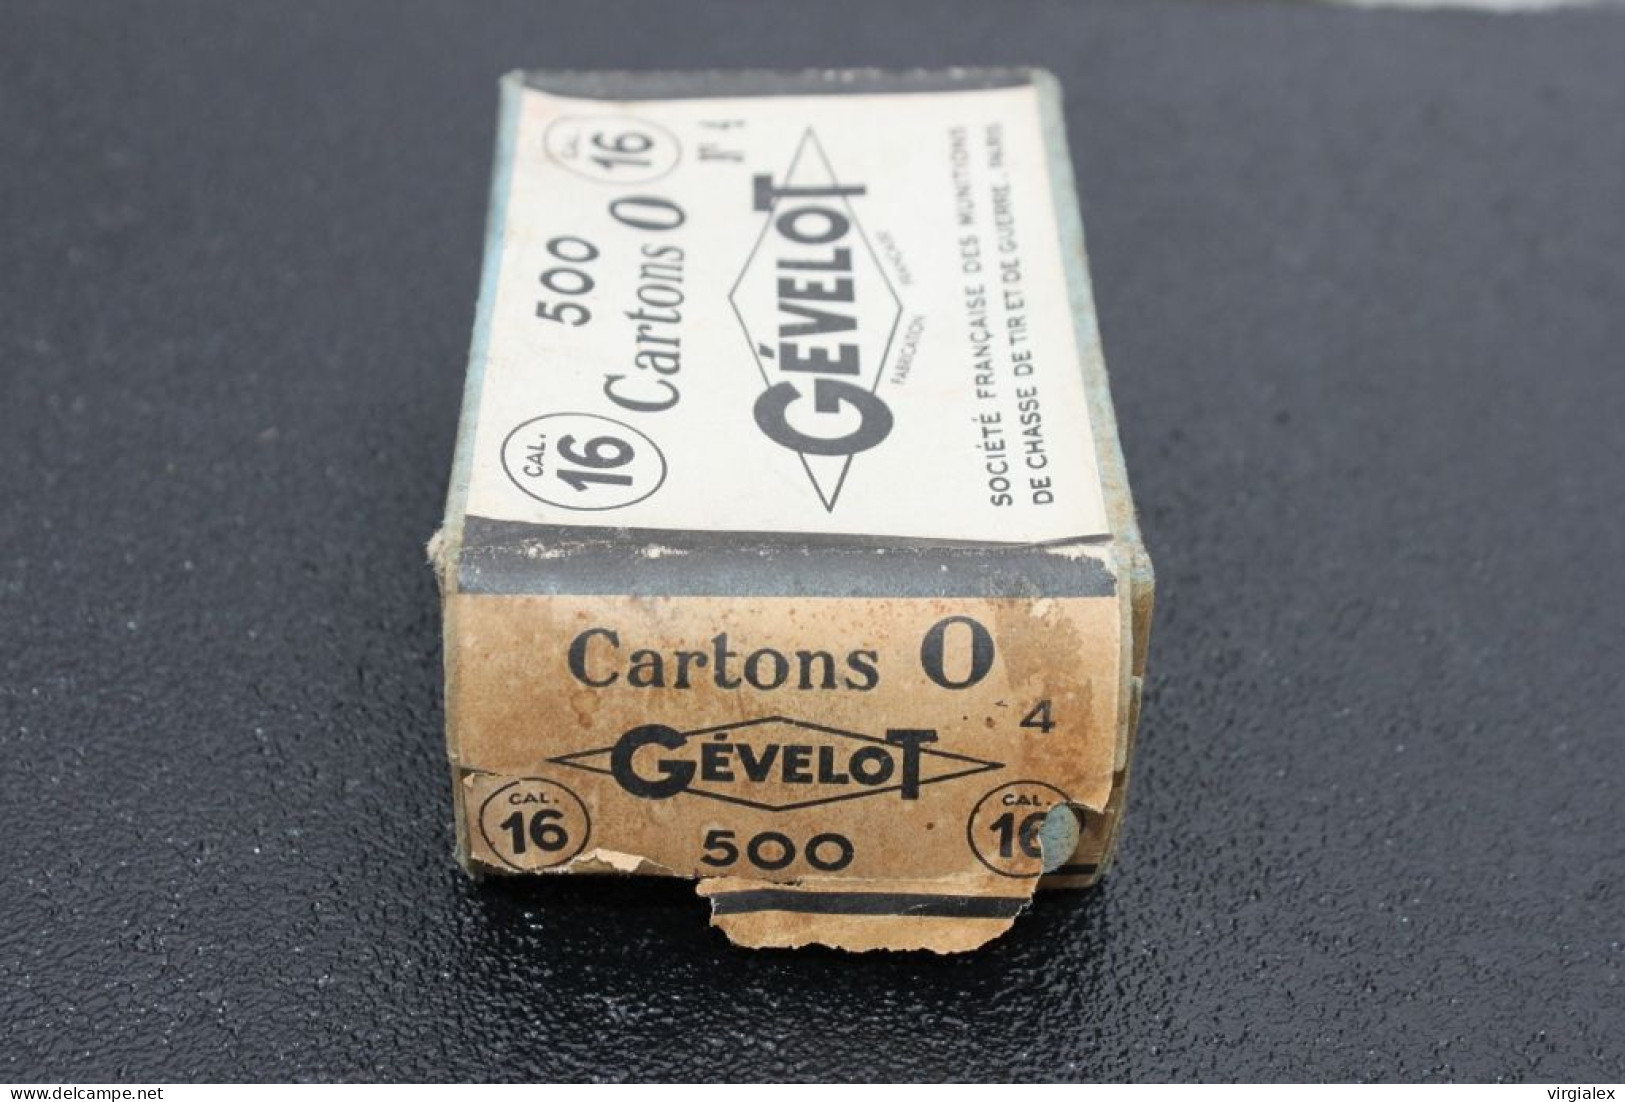 1949 Ancienne Boite Gévelot 500 cartons 0 Vieux Fusil Chasse Calibre 16 Collection Chasseur Cartouche Poudre Noire